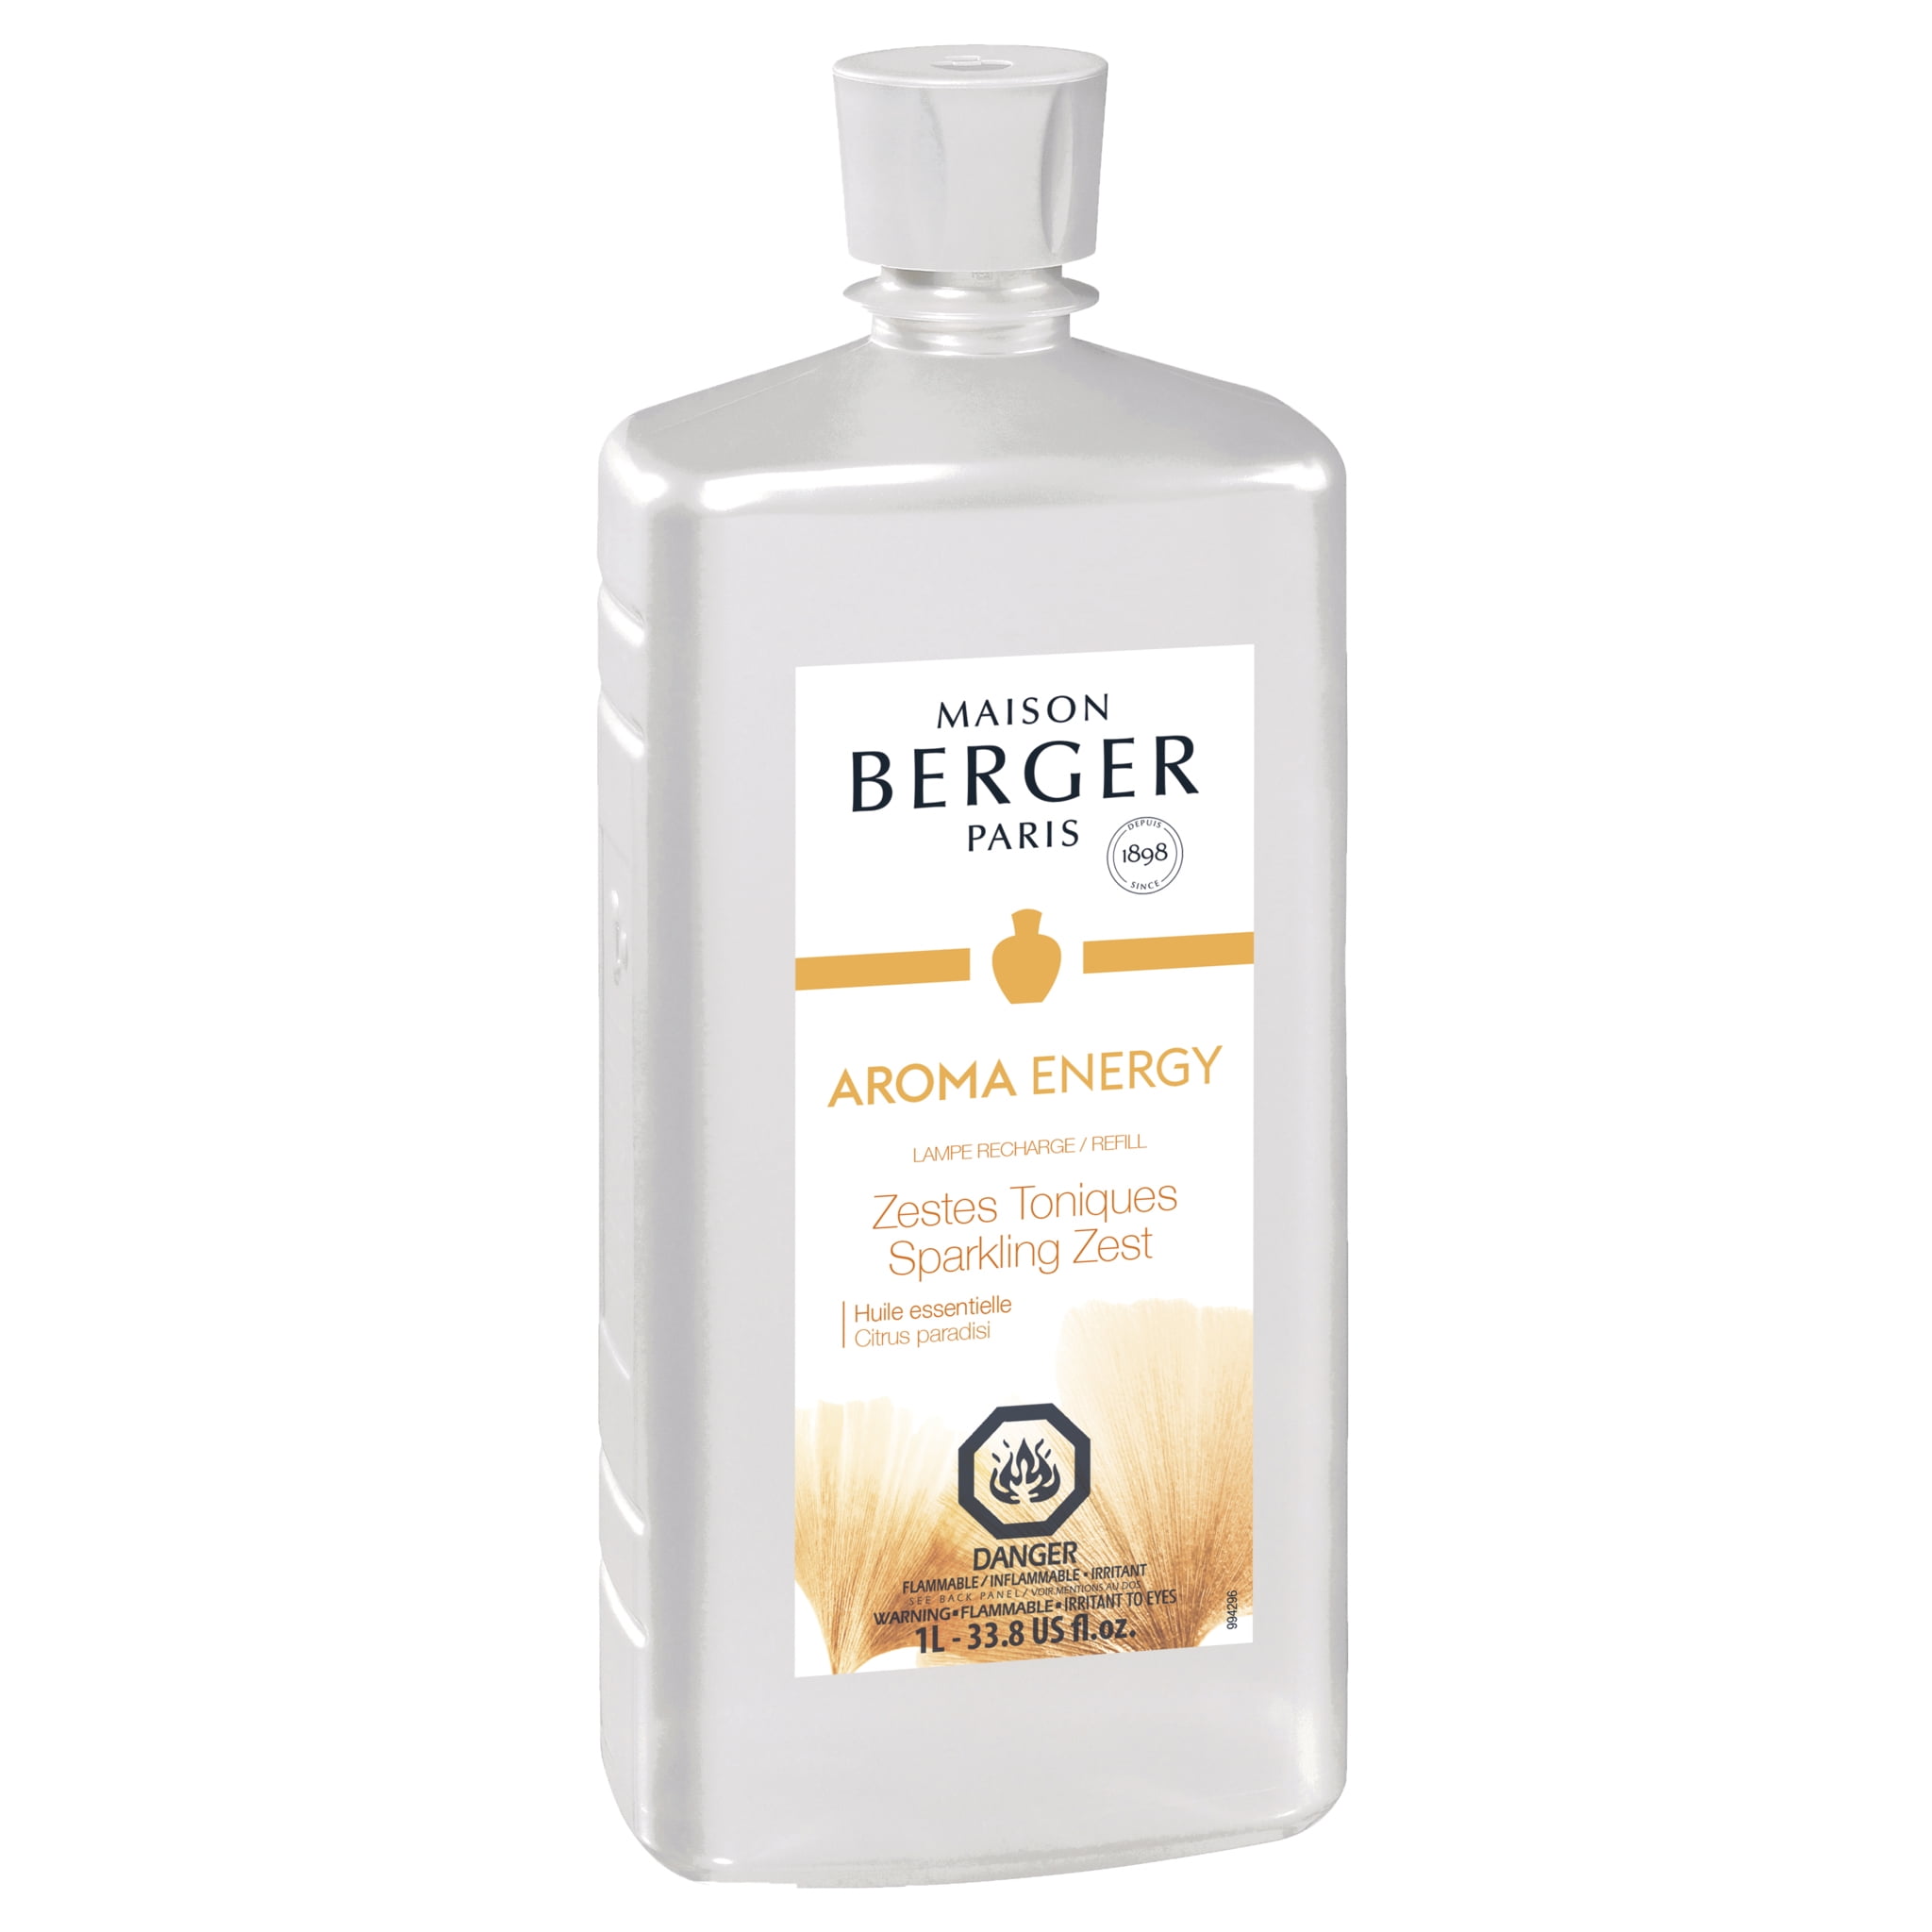 Maison Berger Paris Fragrance Refill 1 liter-Aroma Energy